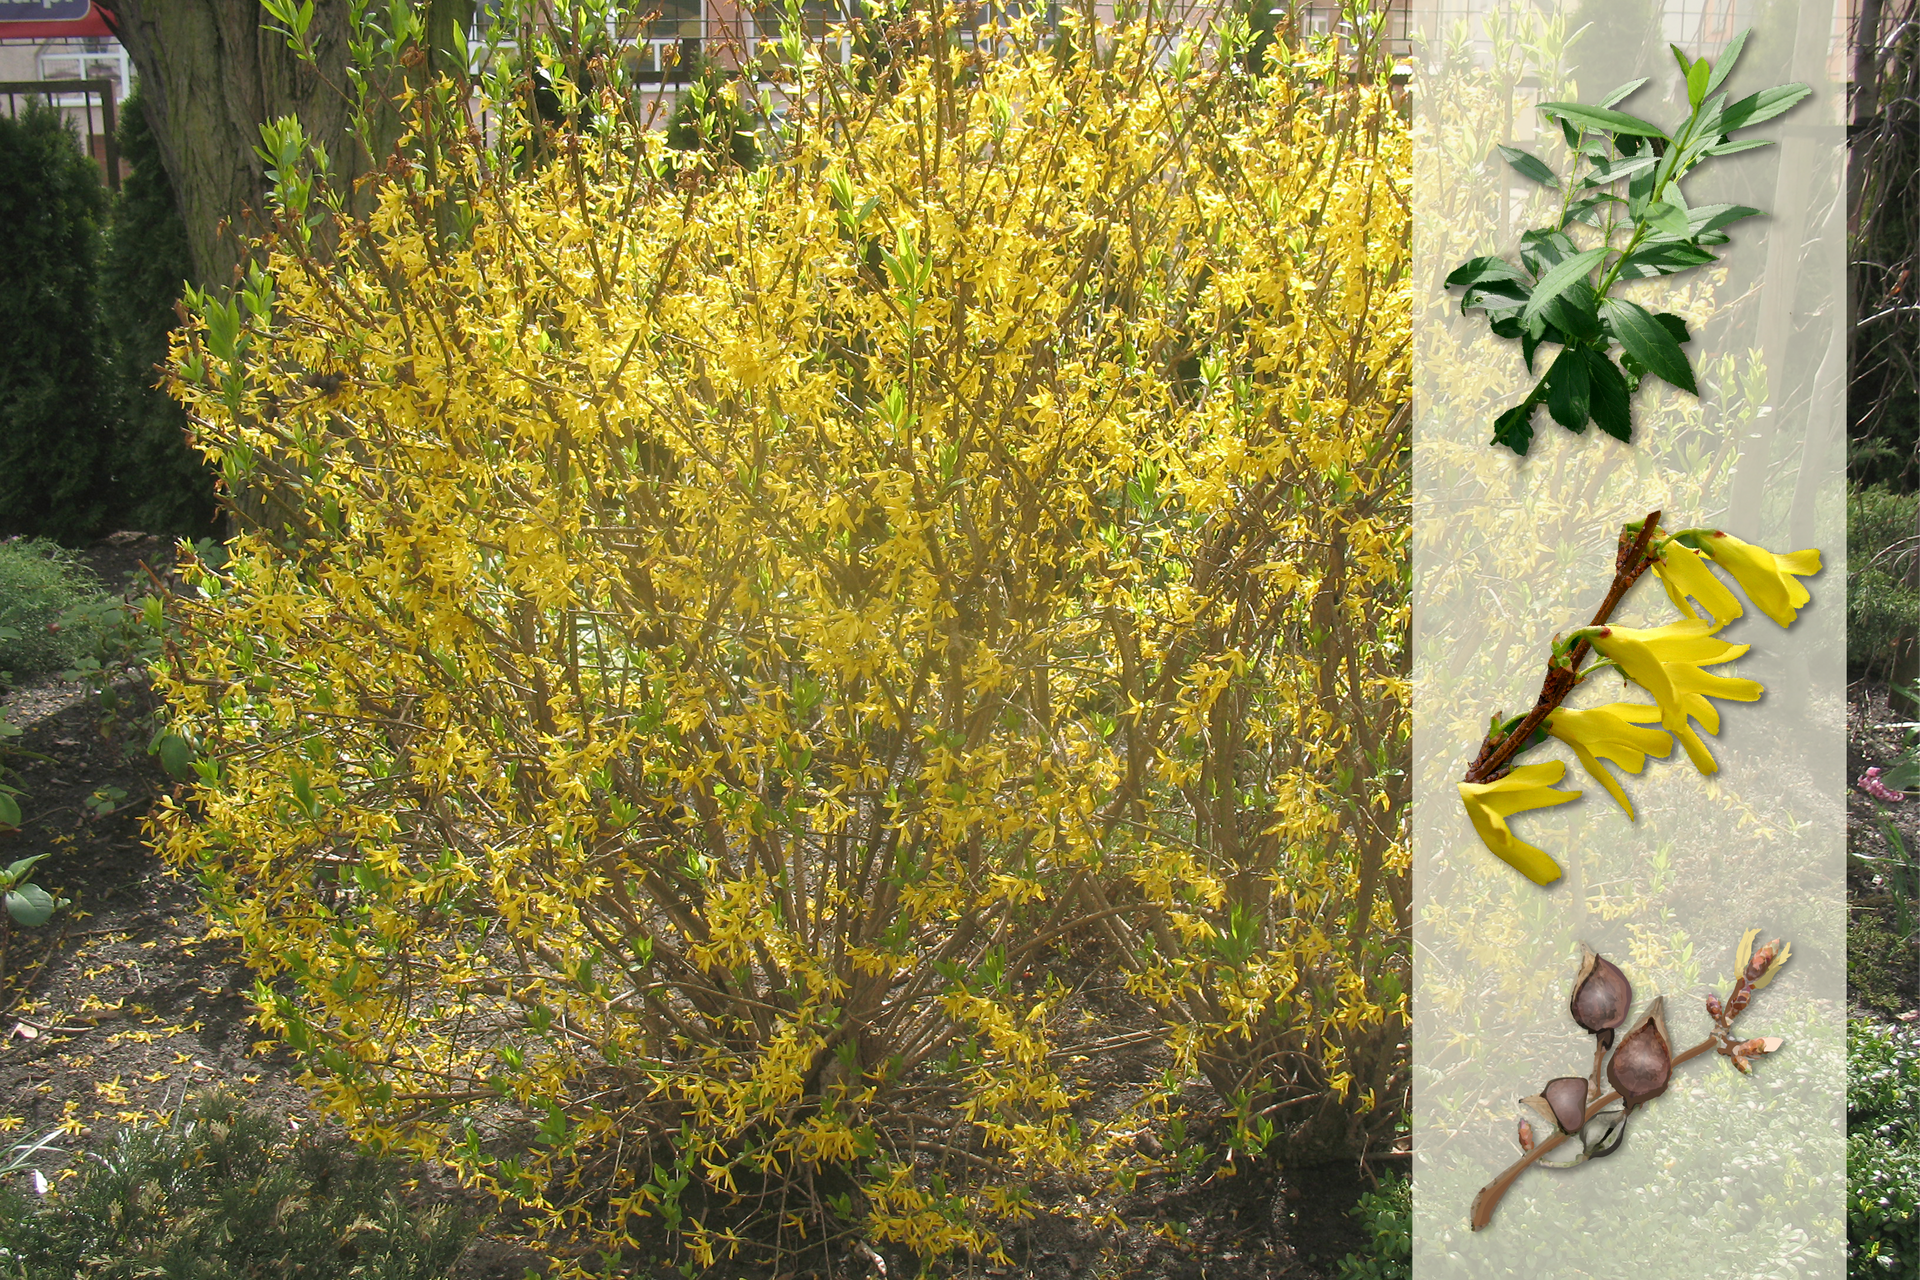 Fotografia przedstawia żółto kwitnący krzew forsycji w ogrodzie. Z prawej strony nałożony jaśniejszy pasek z fotografiami. U góry ciemnozielone, wąskie liście. W środku kilka żółtych, pojedynczych kwiatów, siedzących na bezlistnej gałązce. U dołu gałązka z kulistymi, brązowymi, wzniesionymi owocami.